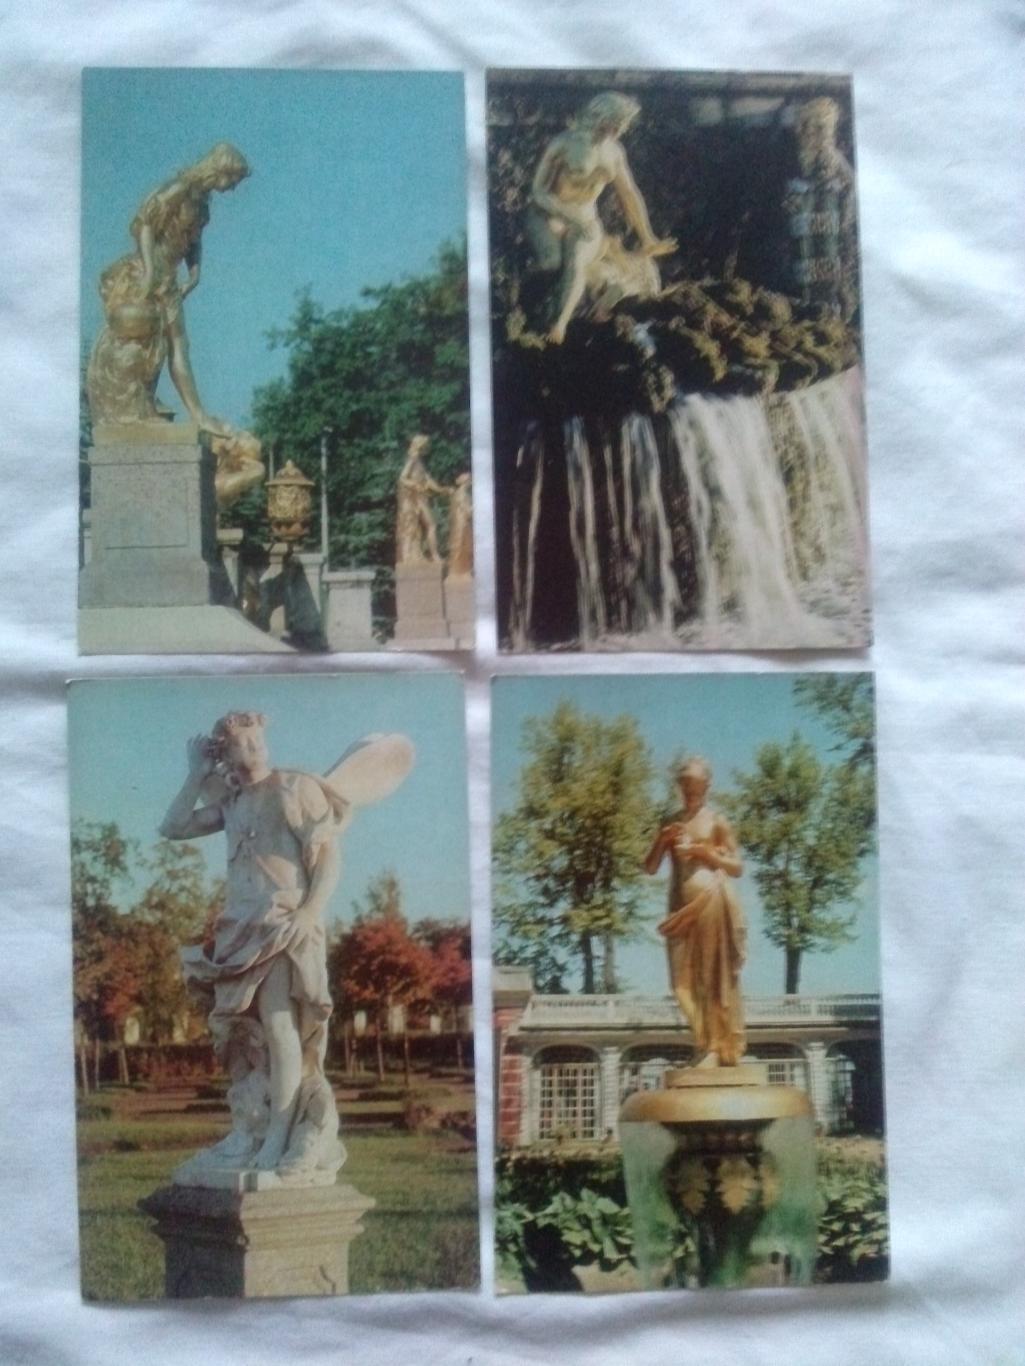 Скульптура Петродворца (Ленинград) 1971 г. полный набор - 18 открыток (идеал) 3